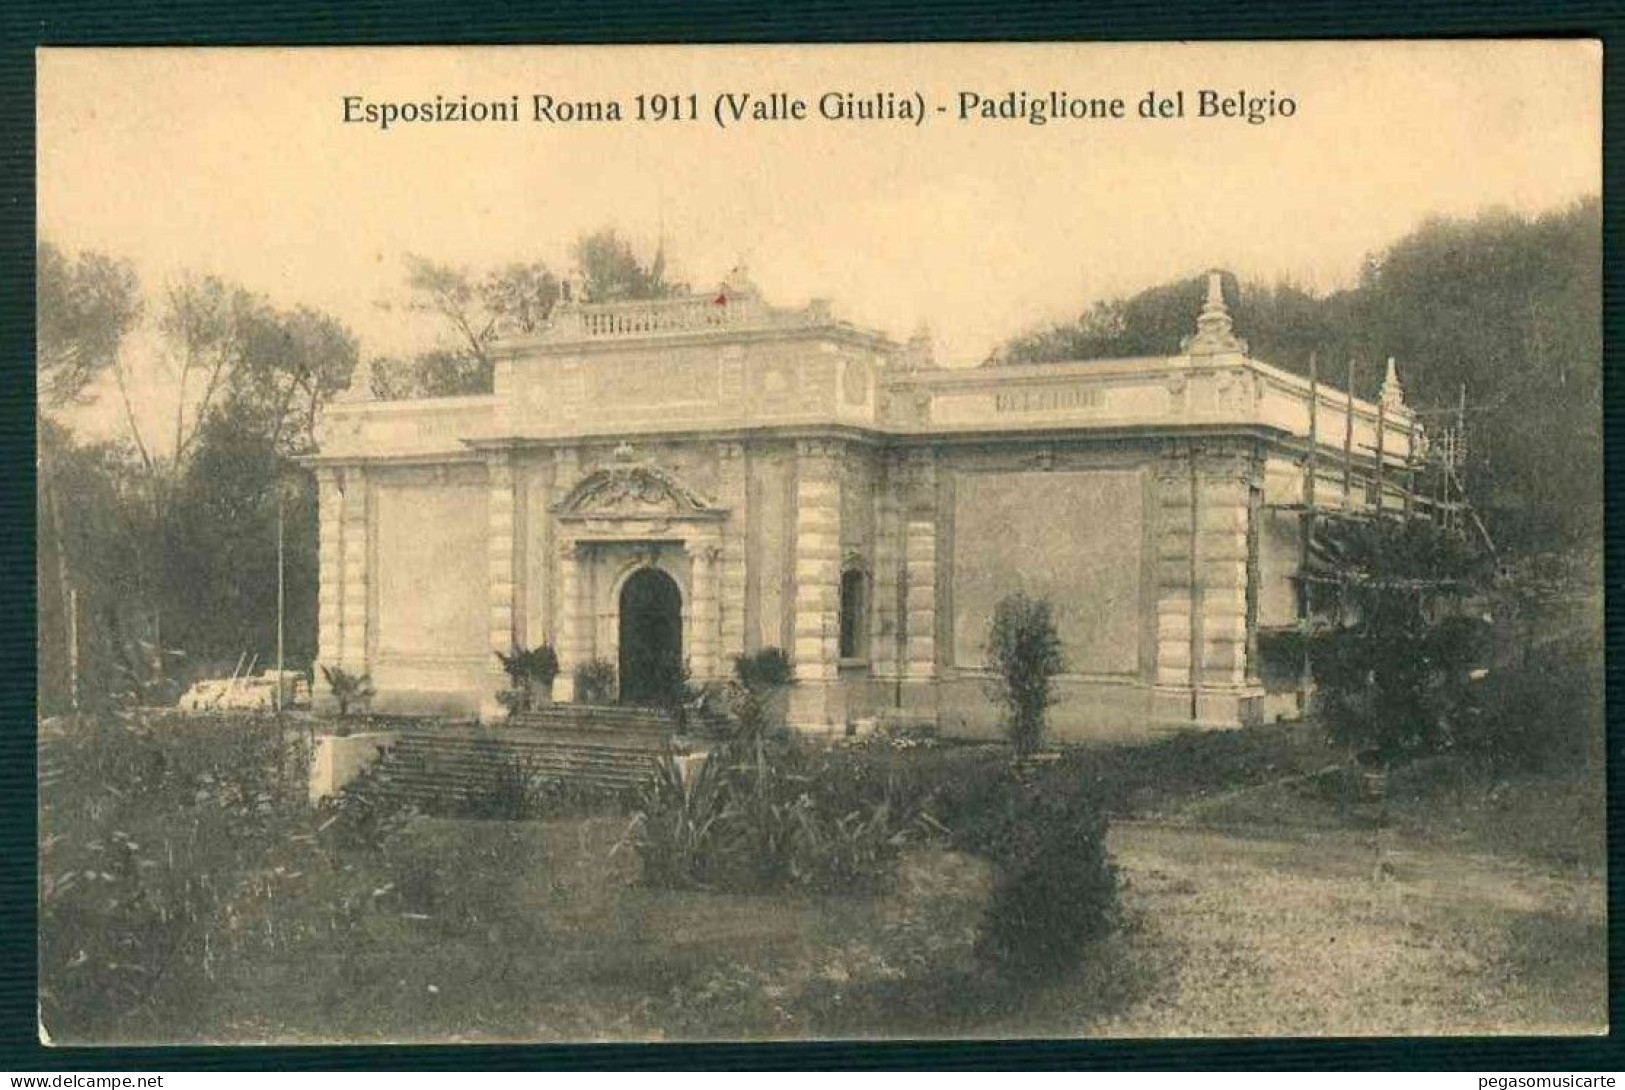 VX233 - ESPOSIZIONI ROMA 1911 (VALLE GIULIA) - PADIGLIONE DEL BELGIO - Expositions